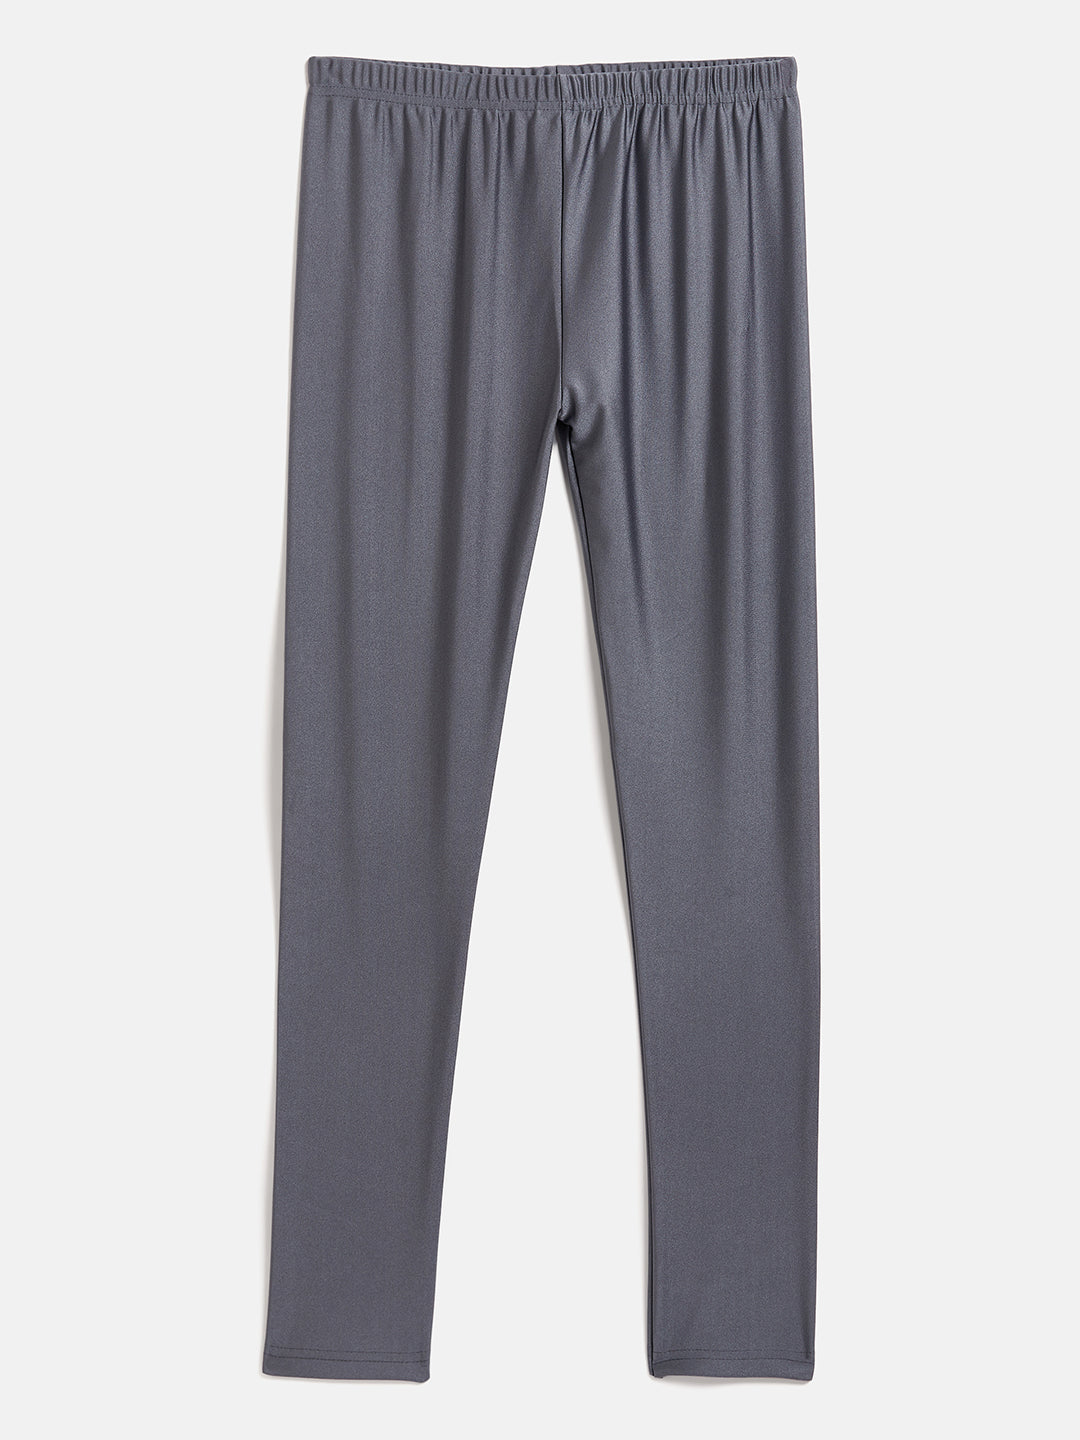 metallic grey leggings – The Pajama Factory